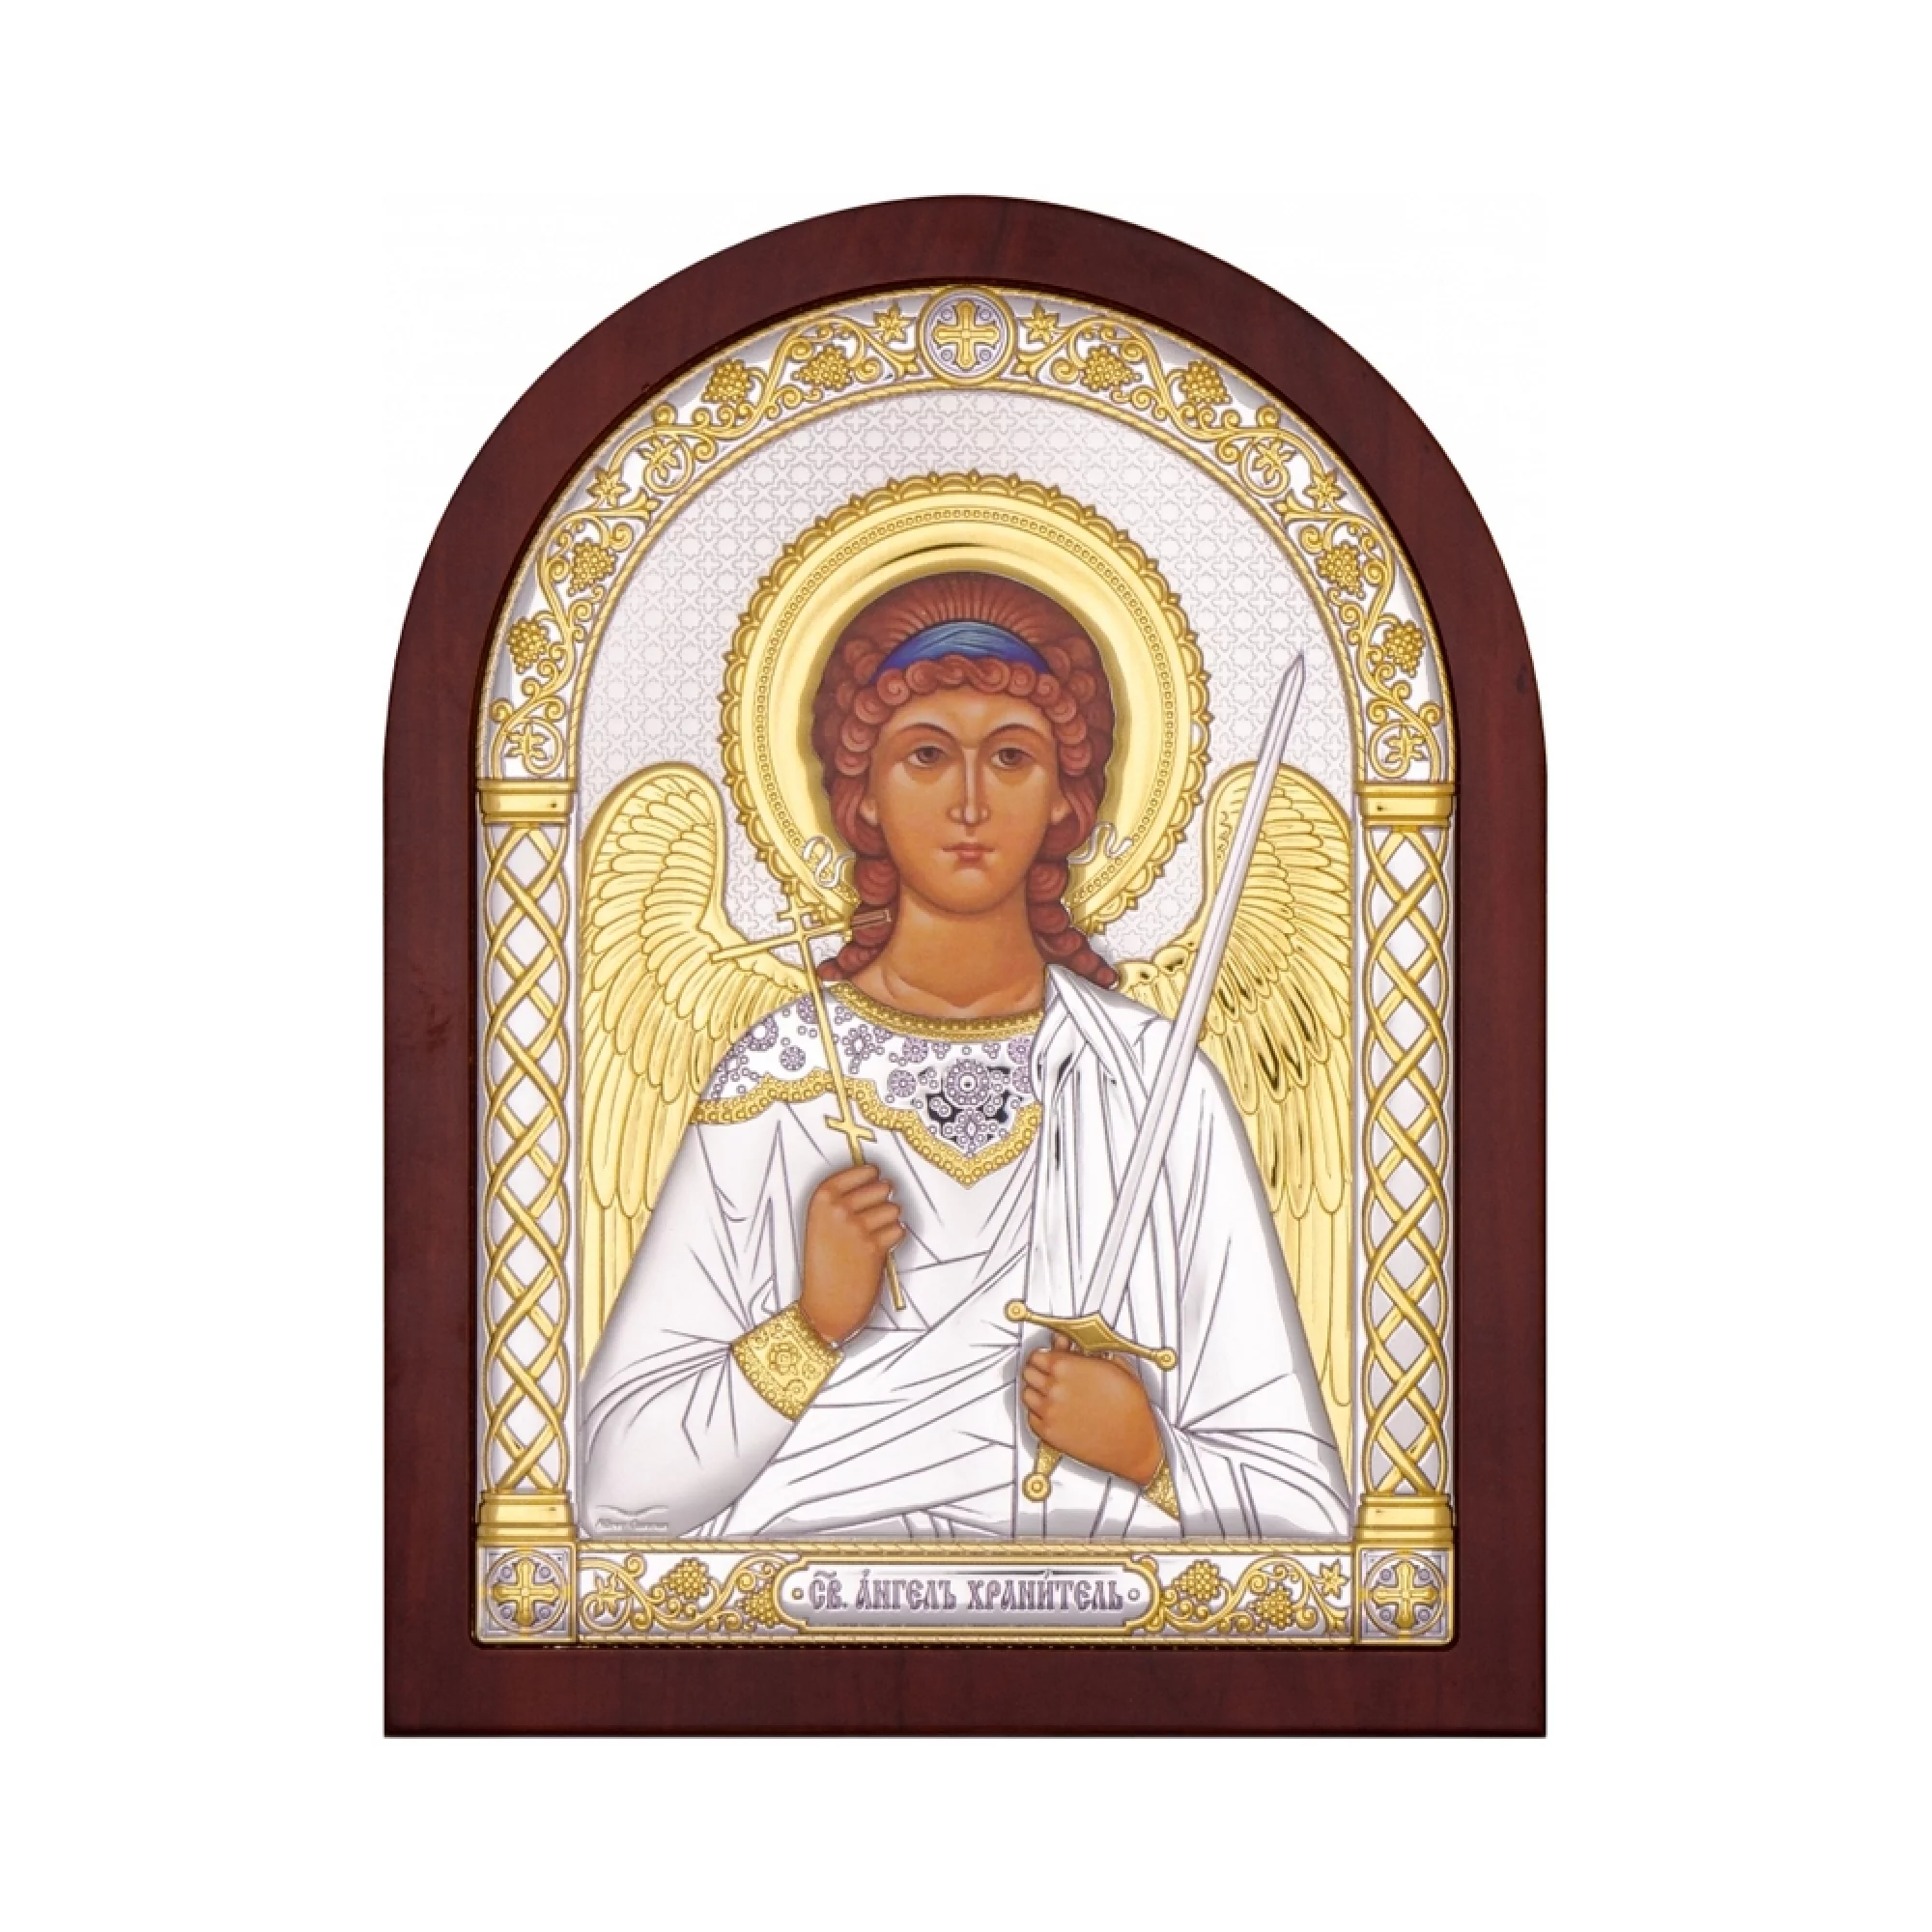 Икона из серебра "Ангел Хранитель" 86х112 мм - 1341434 – изображение 1